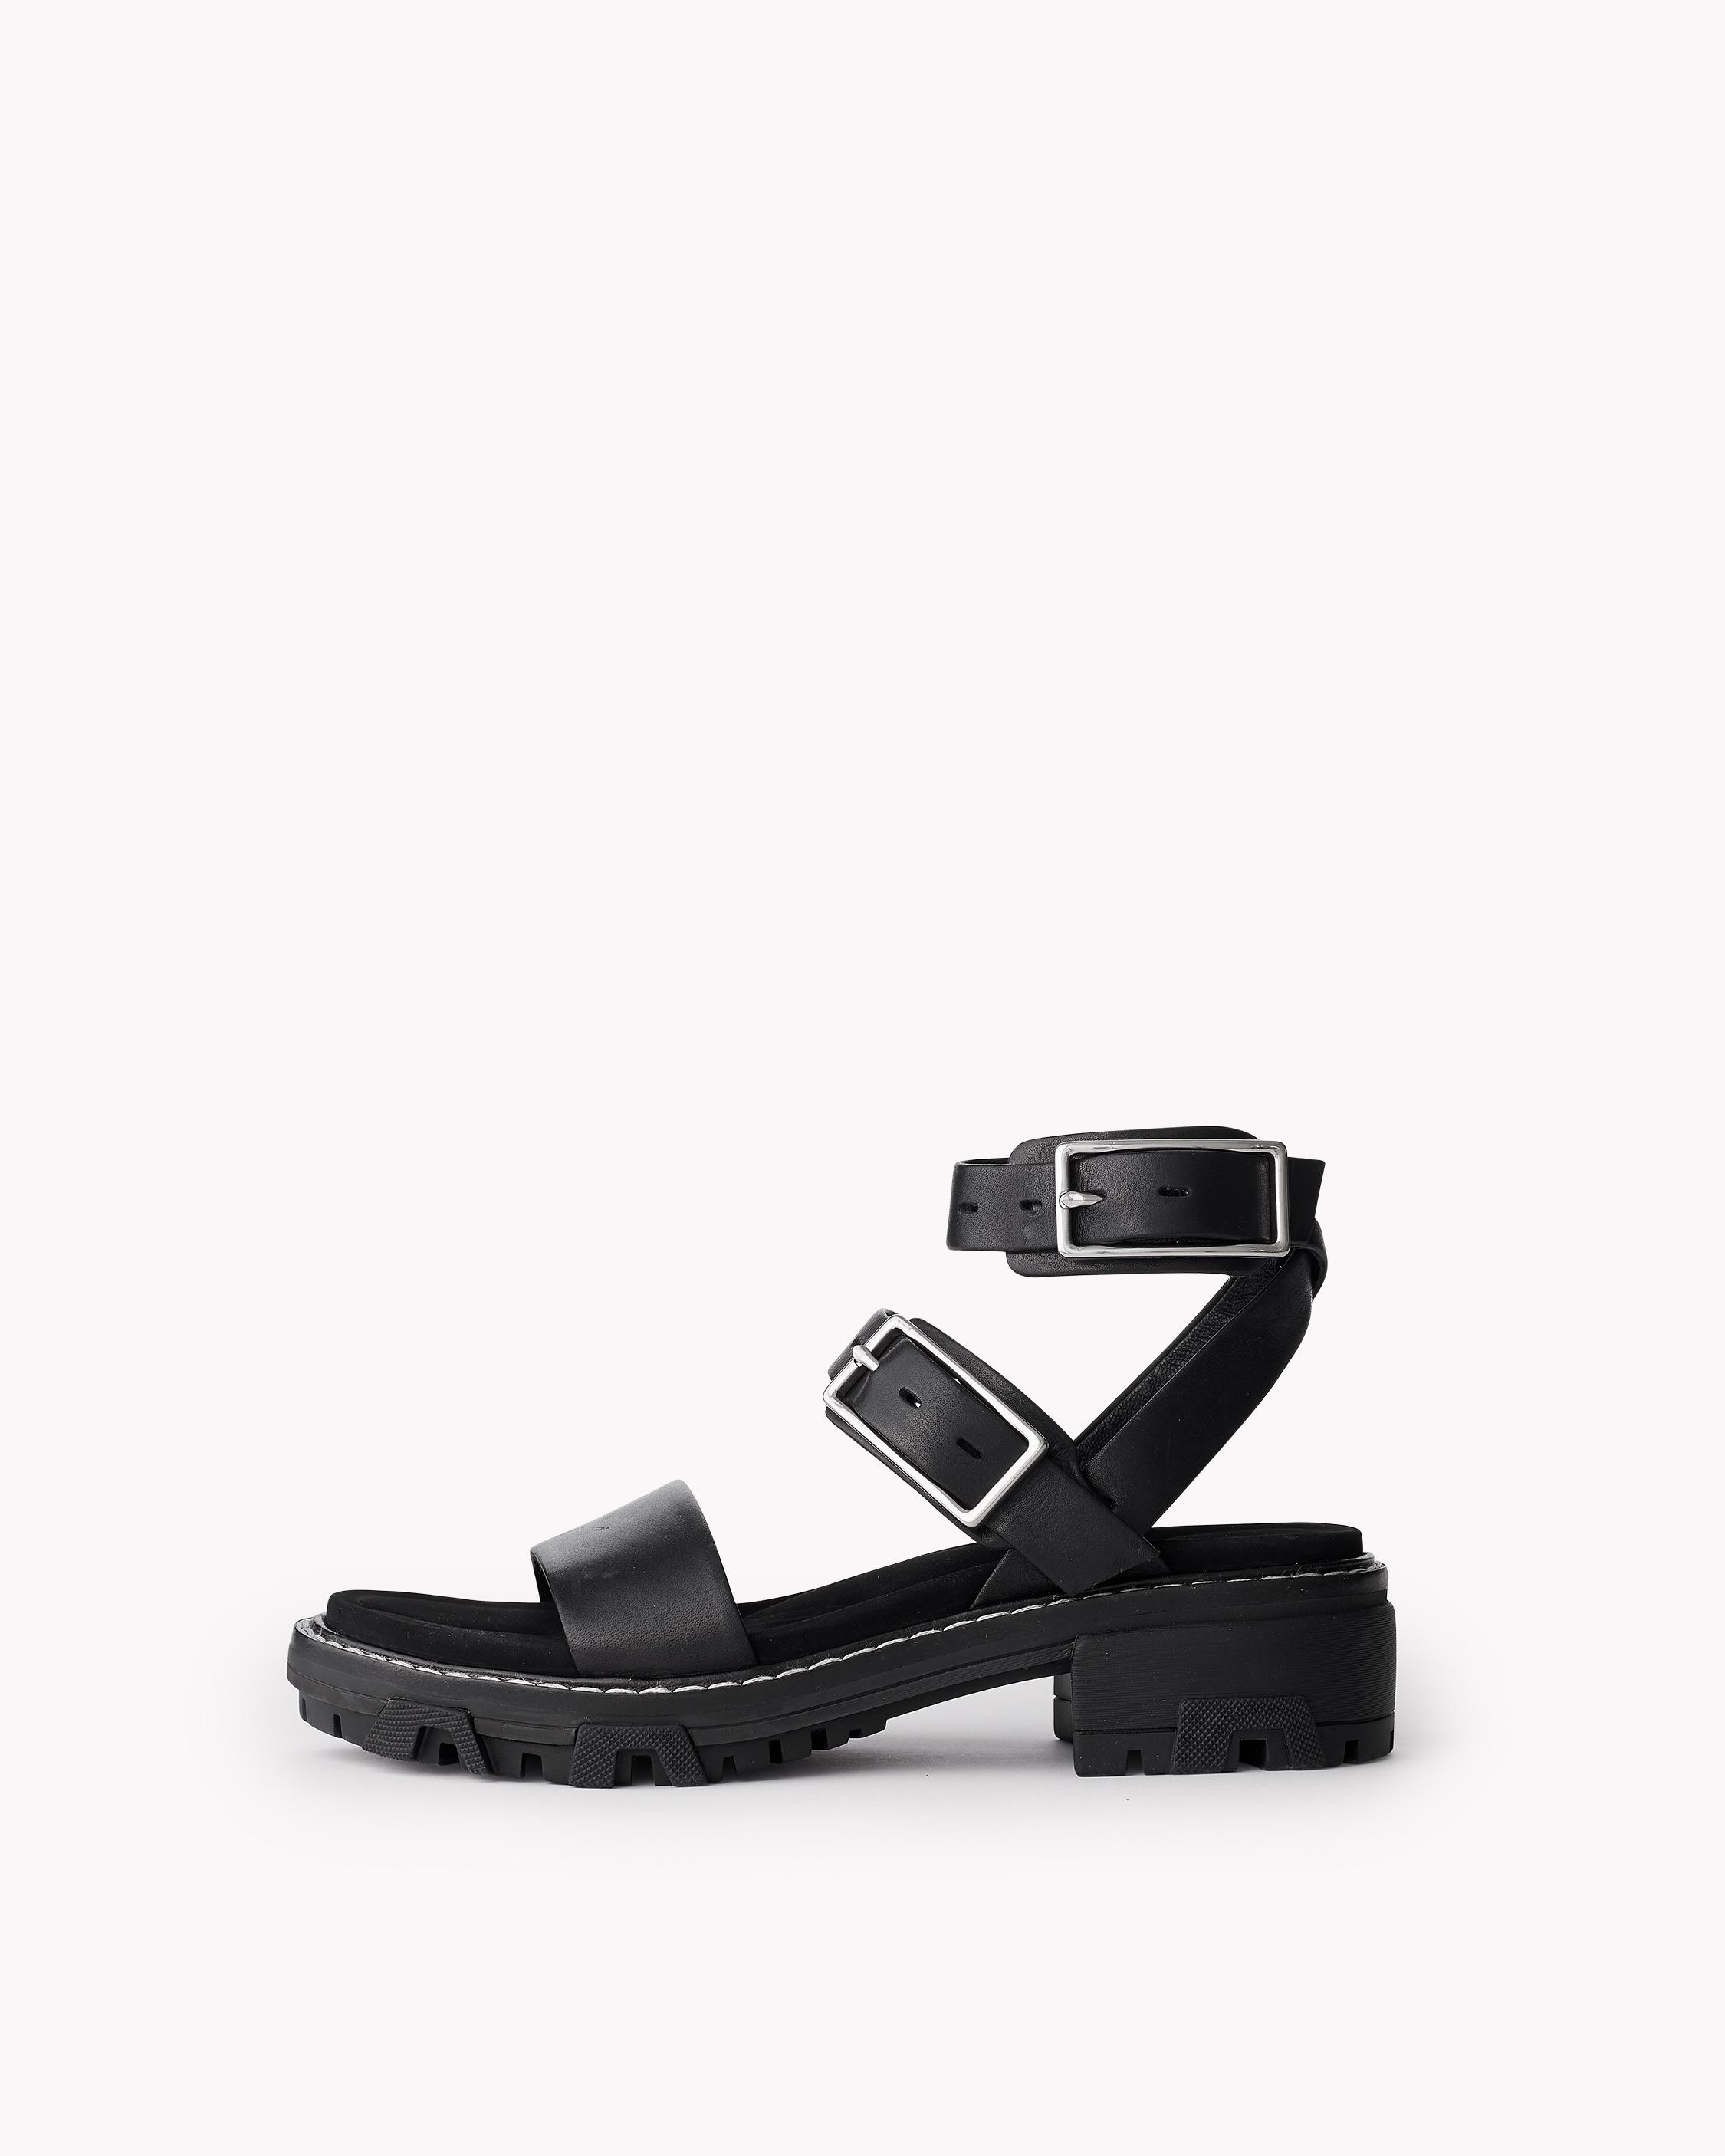 Shiloh Multi-Strap Black Leather Sandals